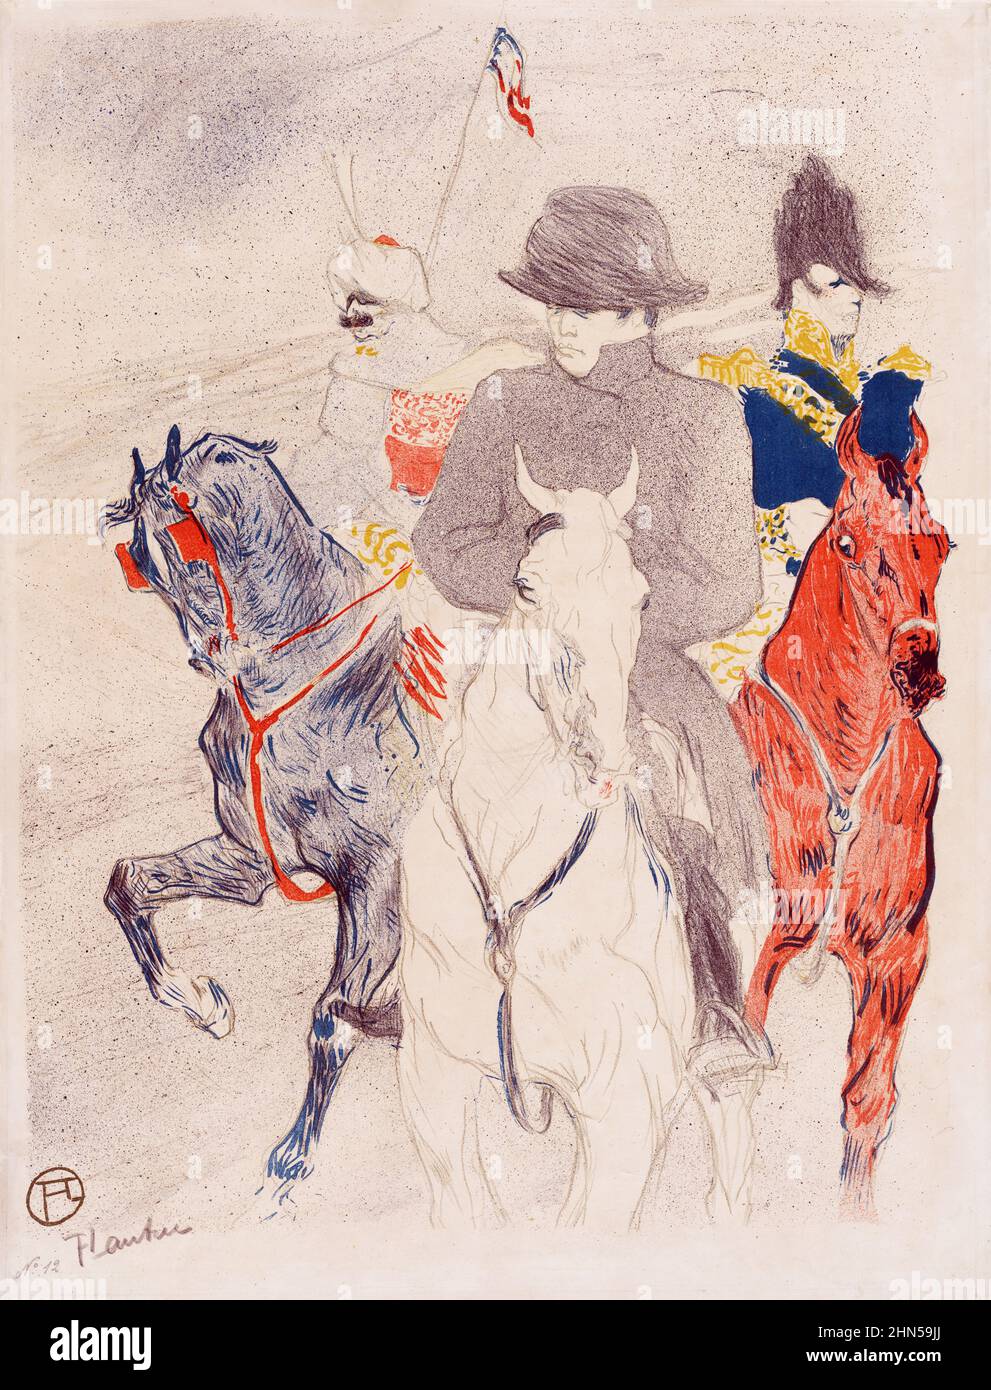 Napoleon (1895). Antique vintage art by Henri Toulouse-Lautrec. Stock Photo